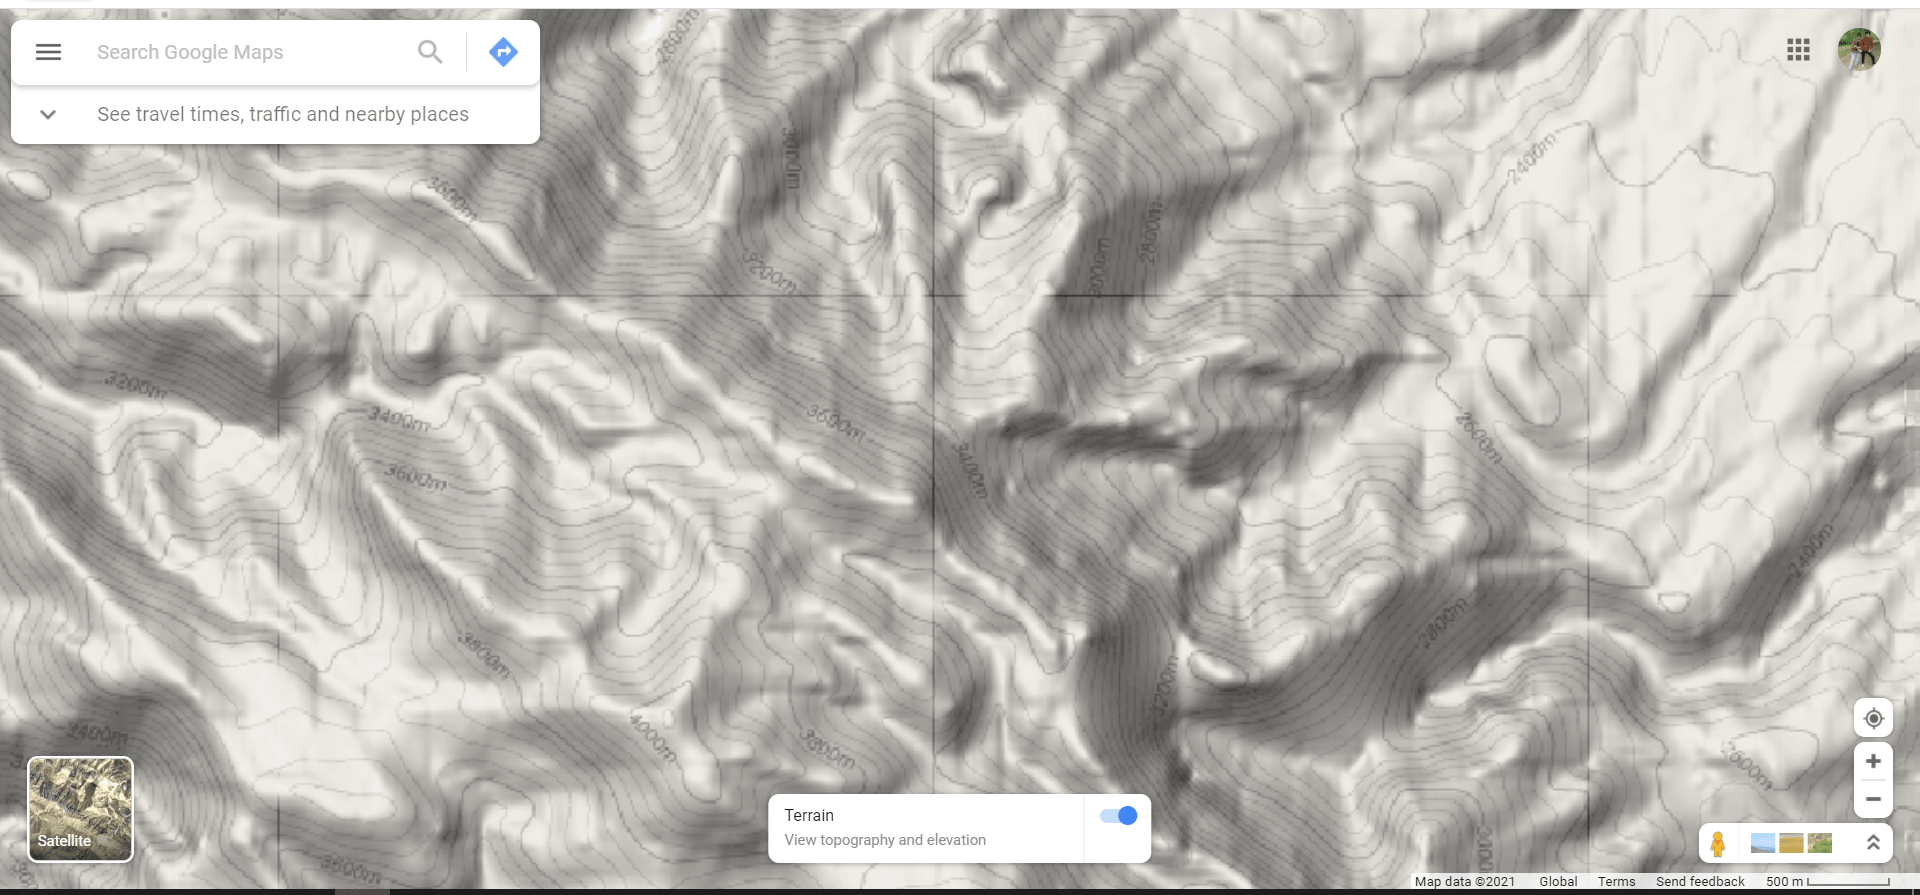 نقشه توپوگرافی سایت Google Terrain